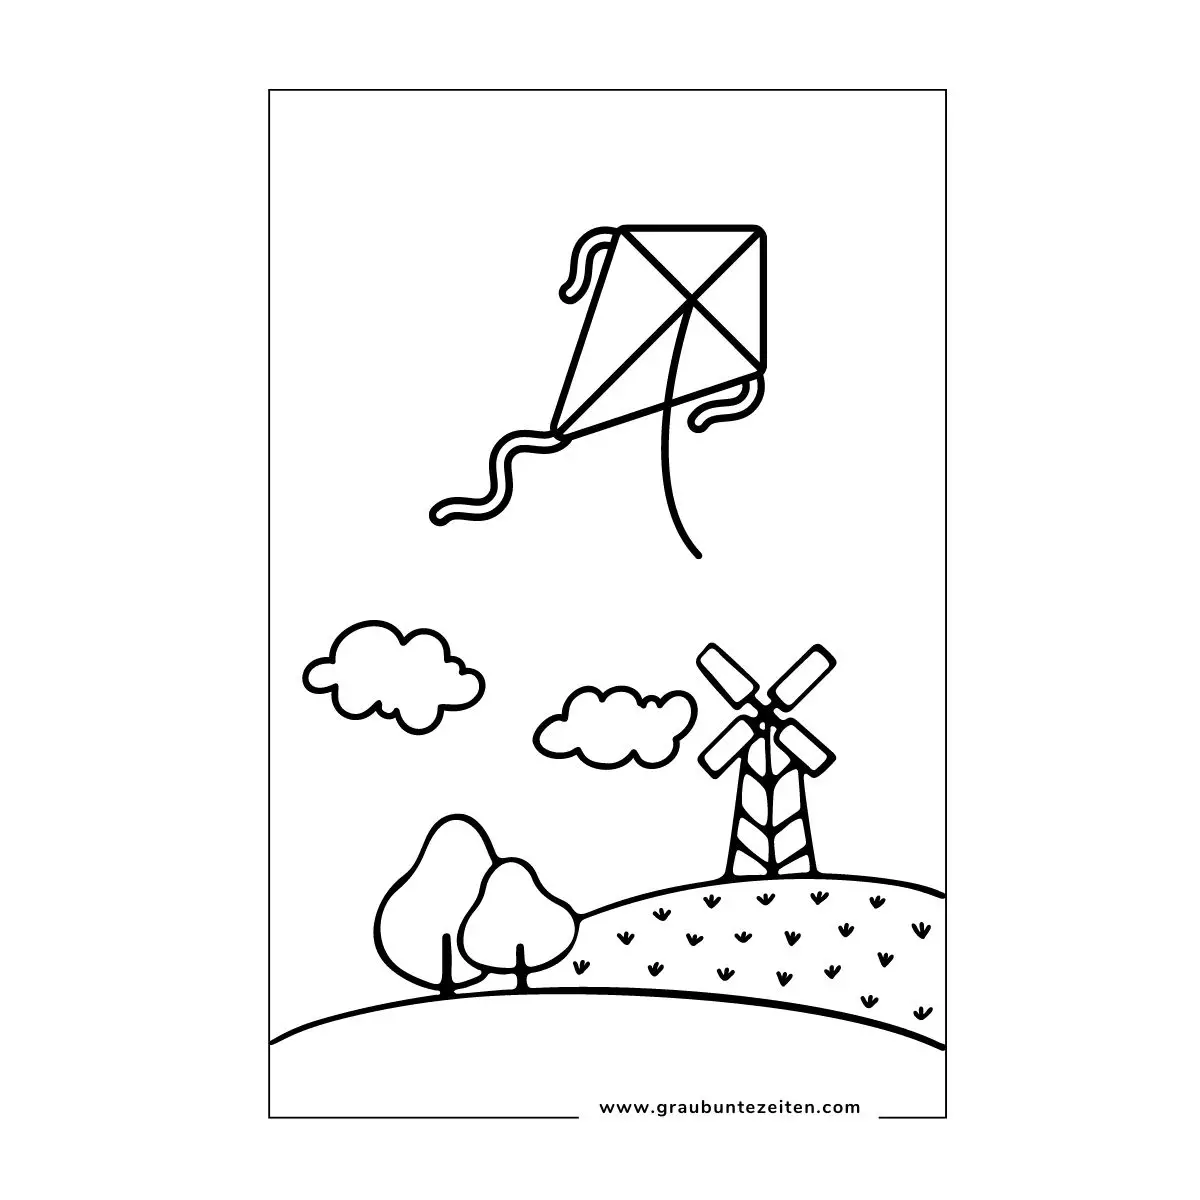 Ein Ausmalbild mit Drachen und einer Windmühle.